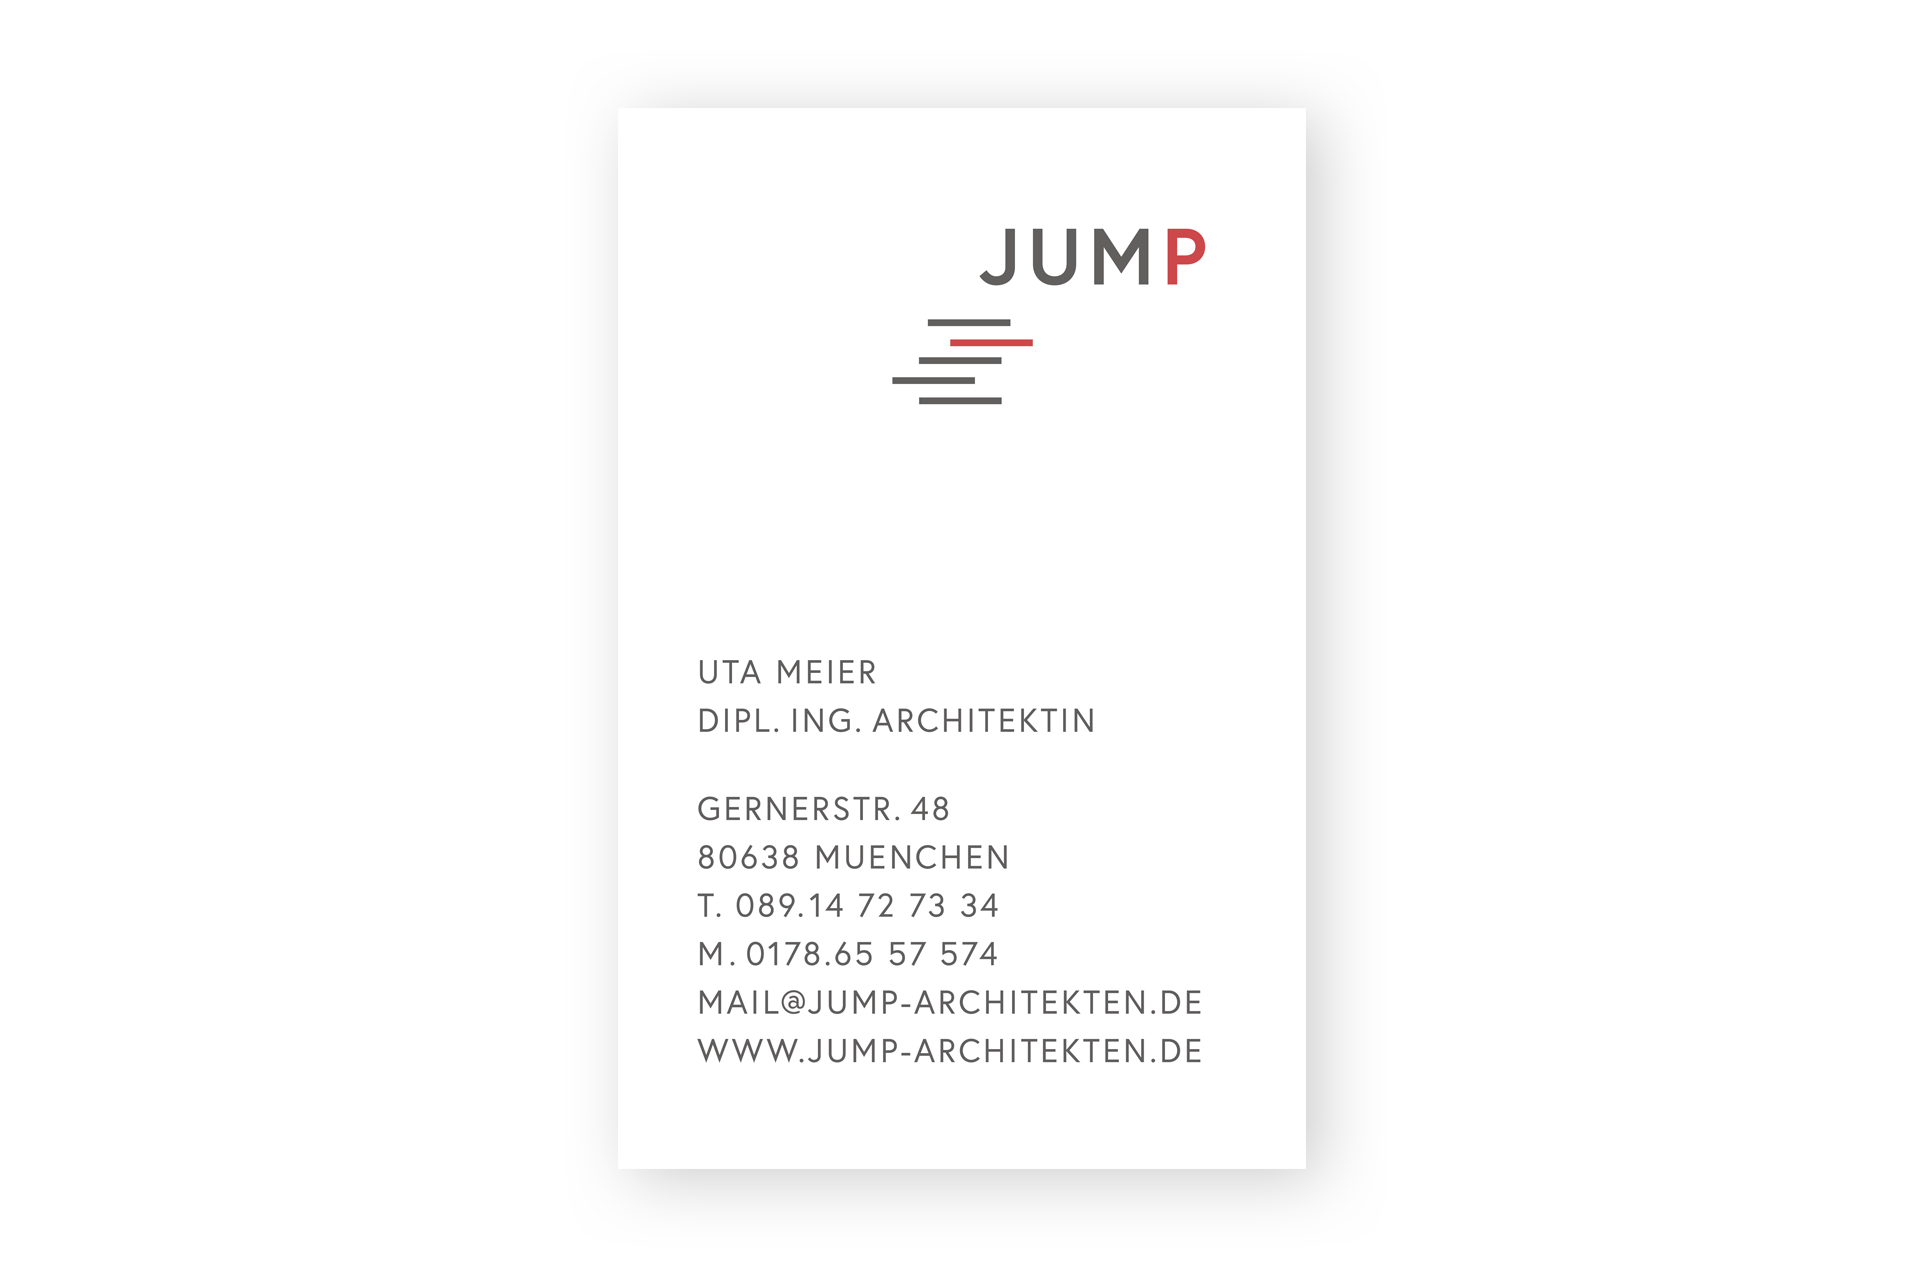 Abbildung der Visitenkarte für Jump-Architekten